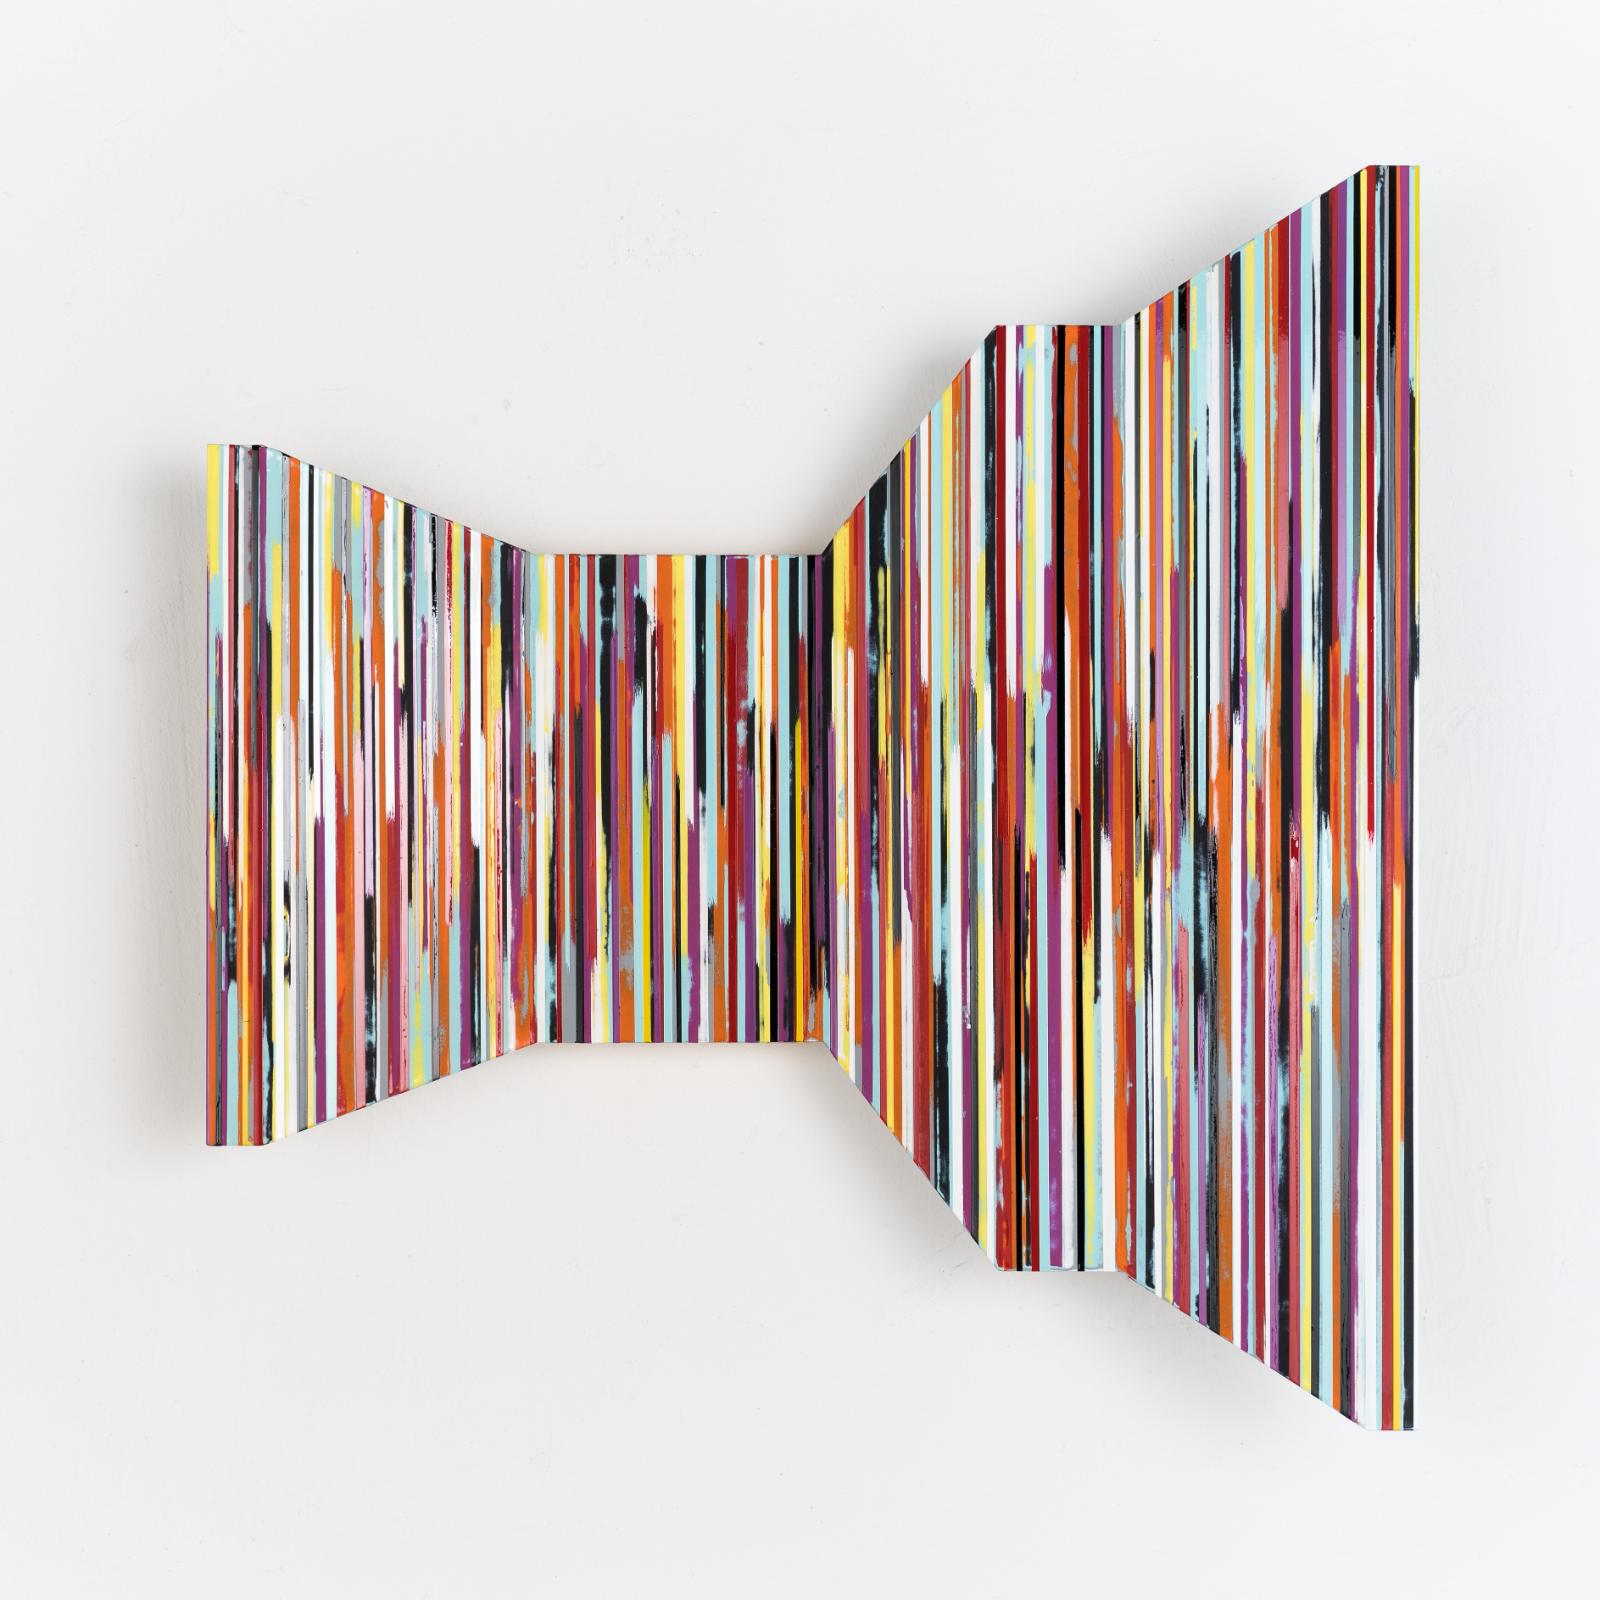 Stefan Schiek, WARFOLD #5, 2019,  Glanzlack auf gefaltetem Aluminium, 60 x 60 cm, Preis auf Anfrage